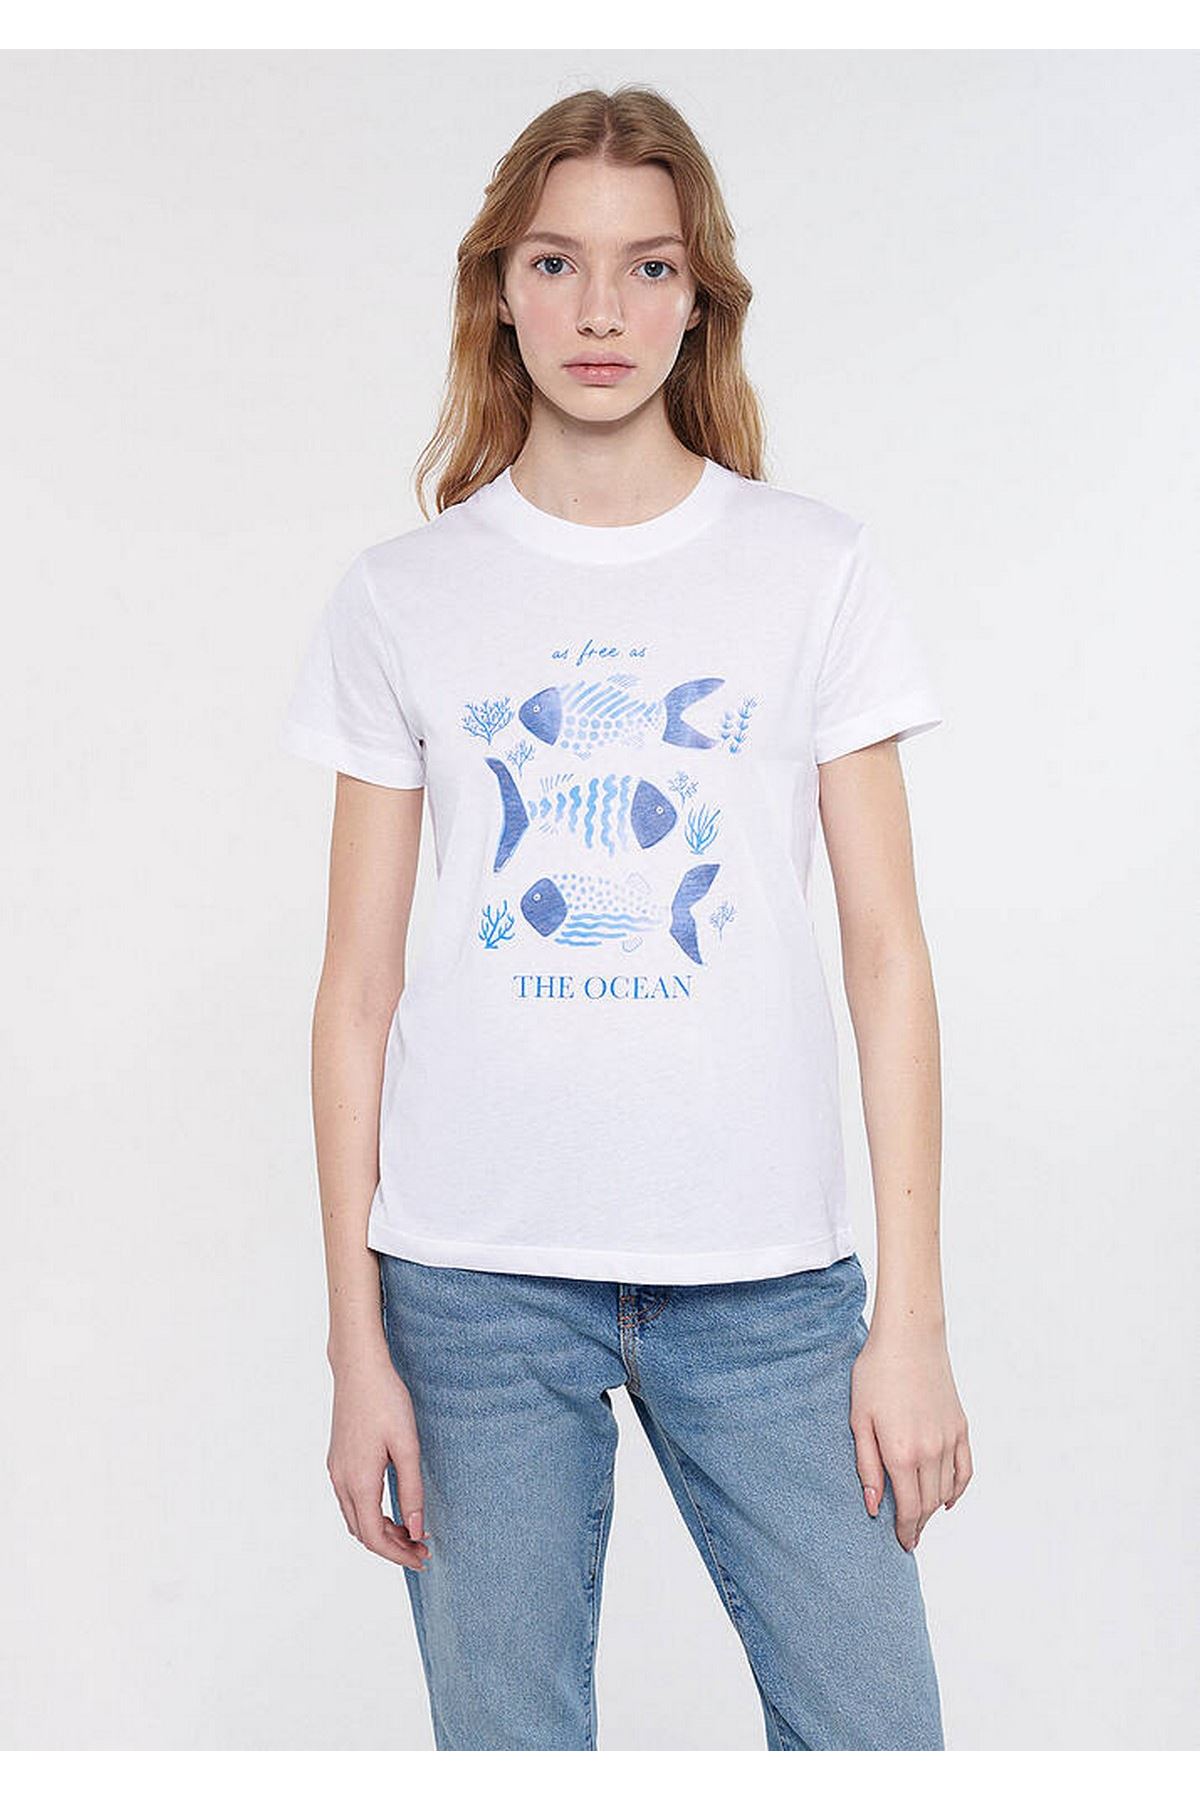 The Ocean Balık Baskılı Mavi Kadın Beyaz Tişört - M1611284-620